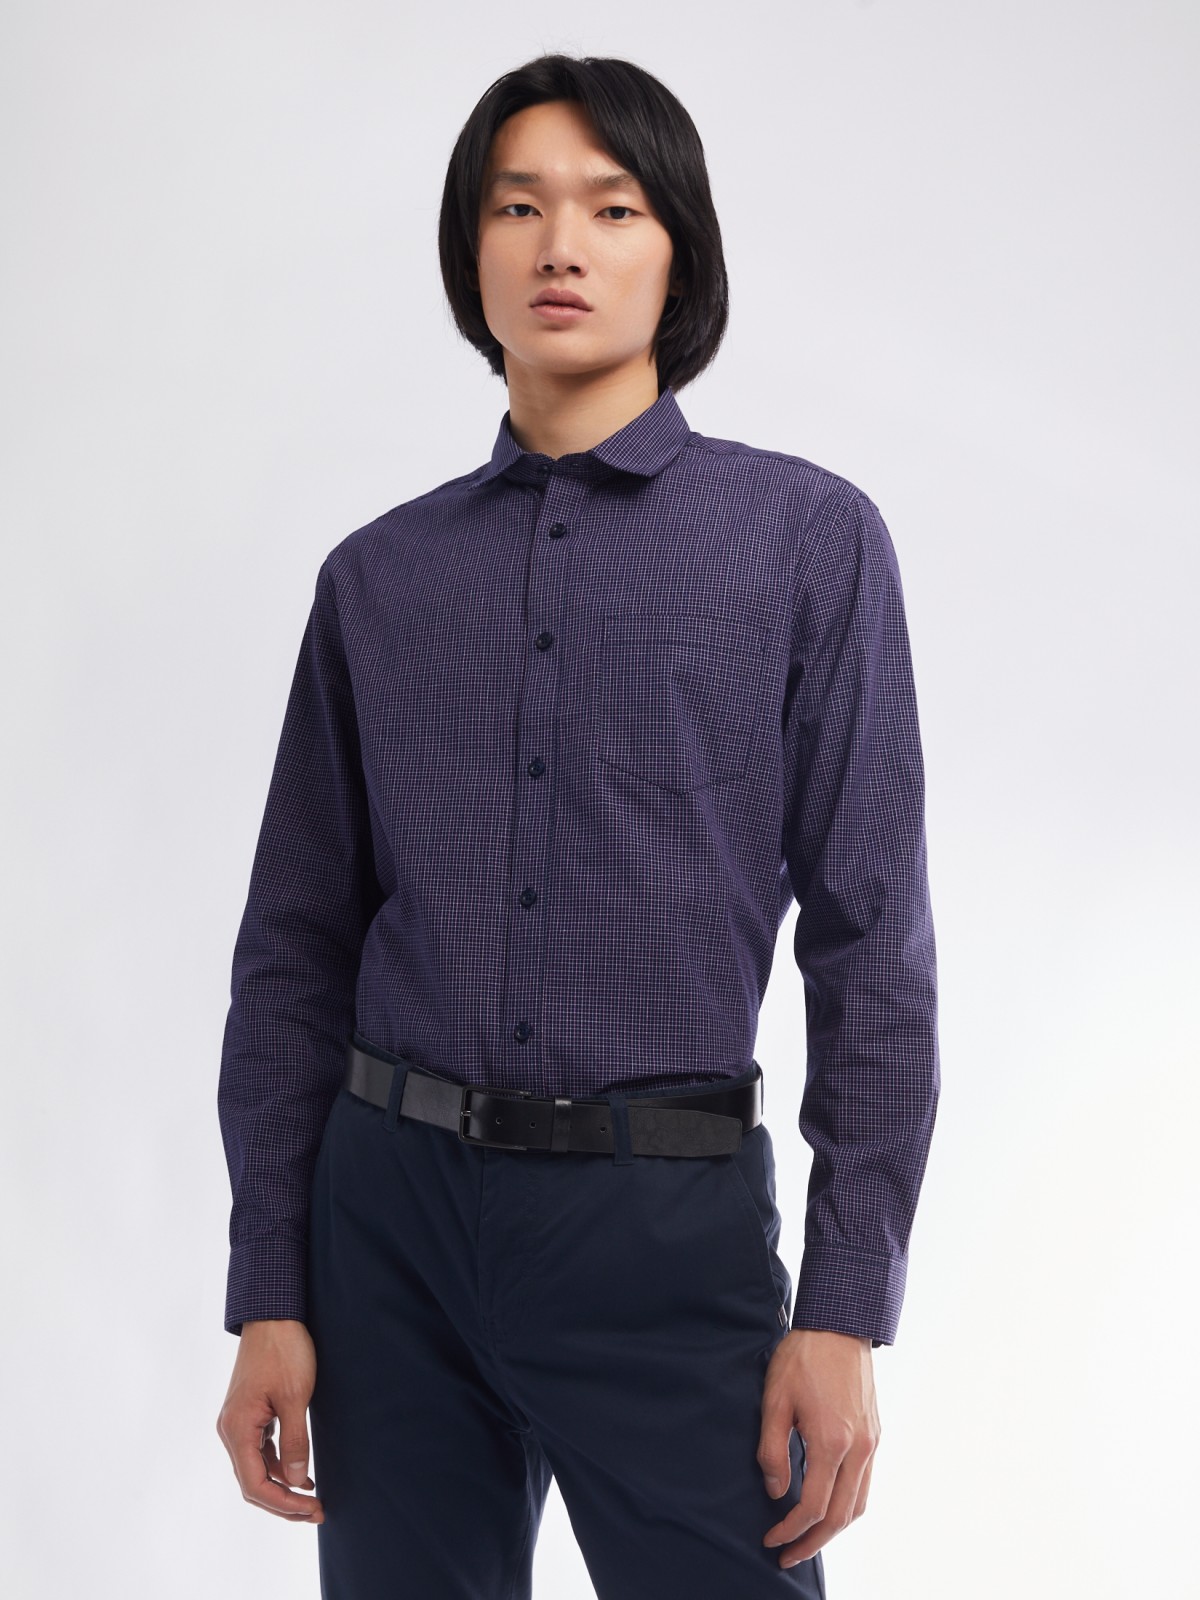 Офисная рубашка прямого силуэта с узором в клетку zolla 01411217Y022, цвет фиолетовый, размер M